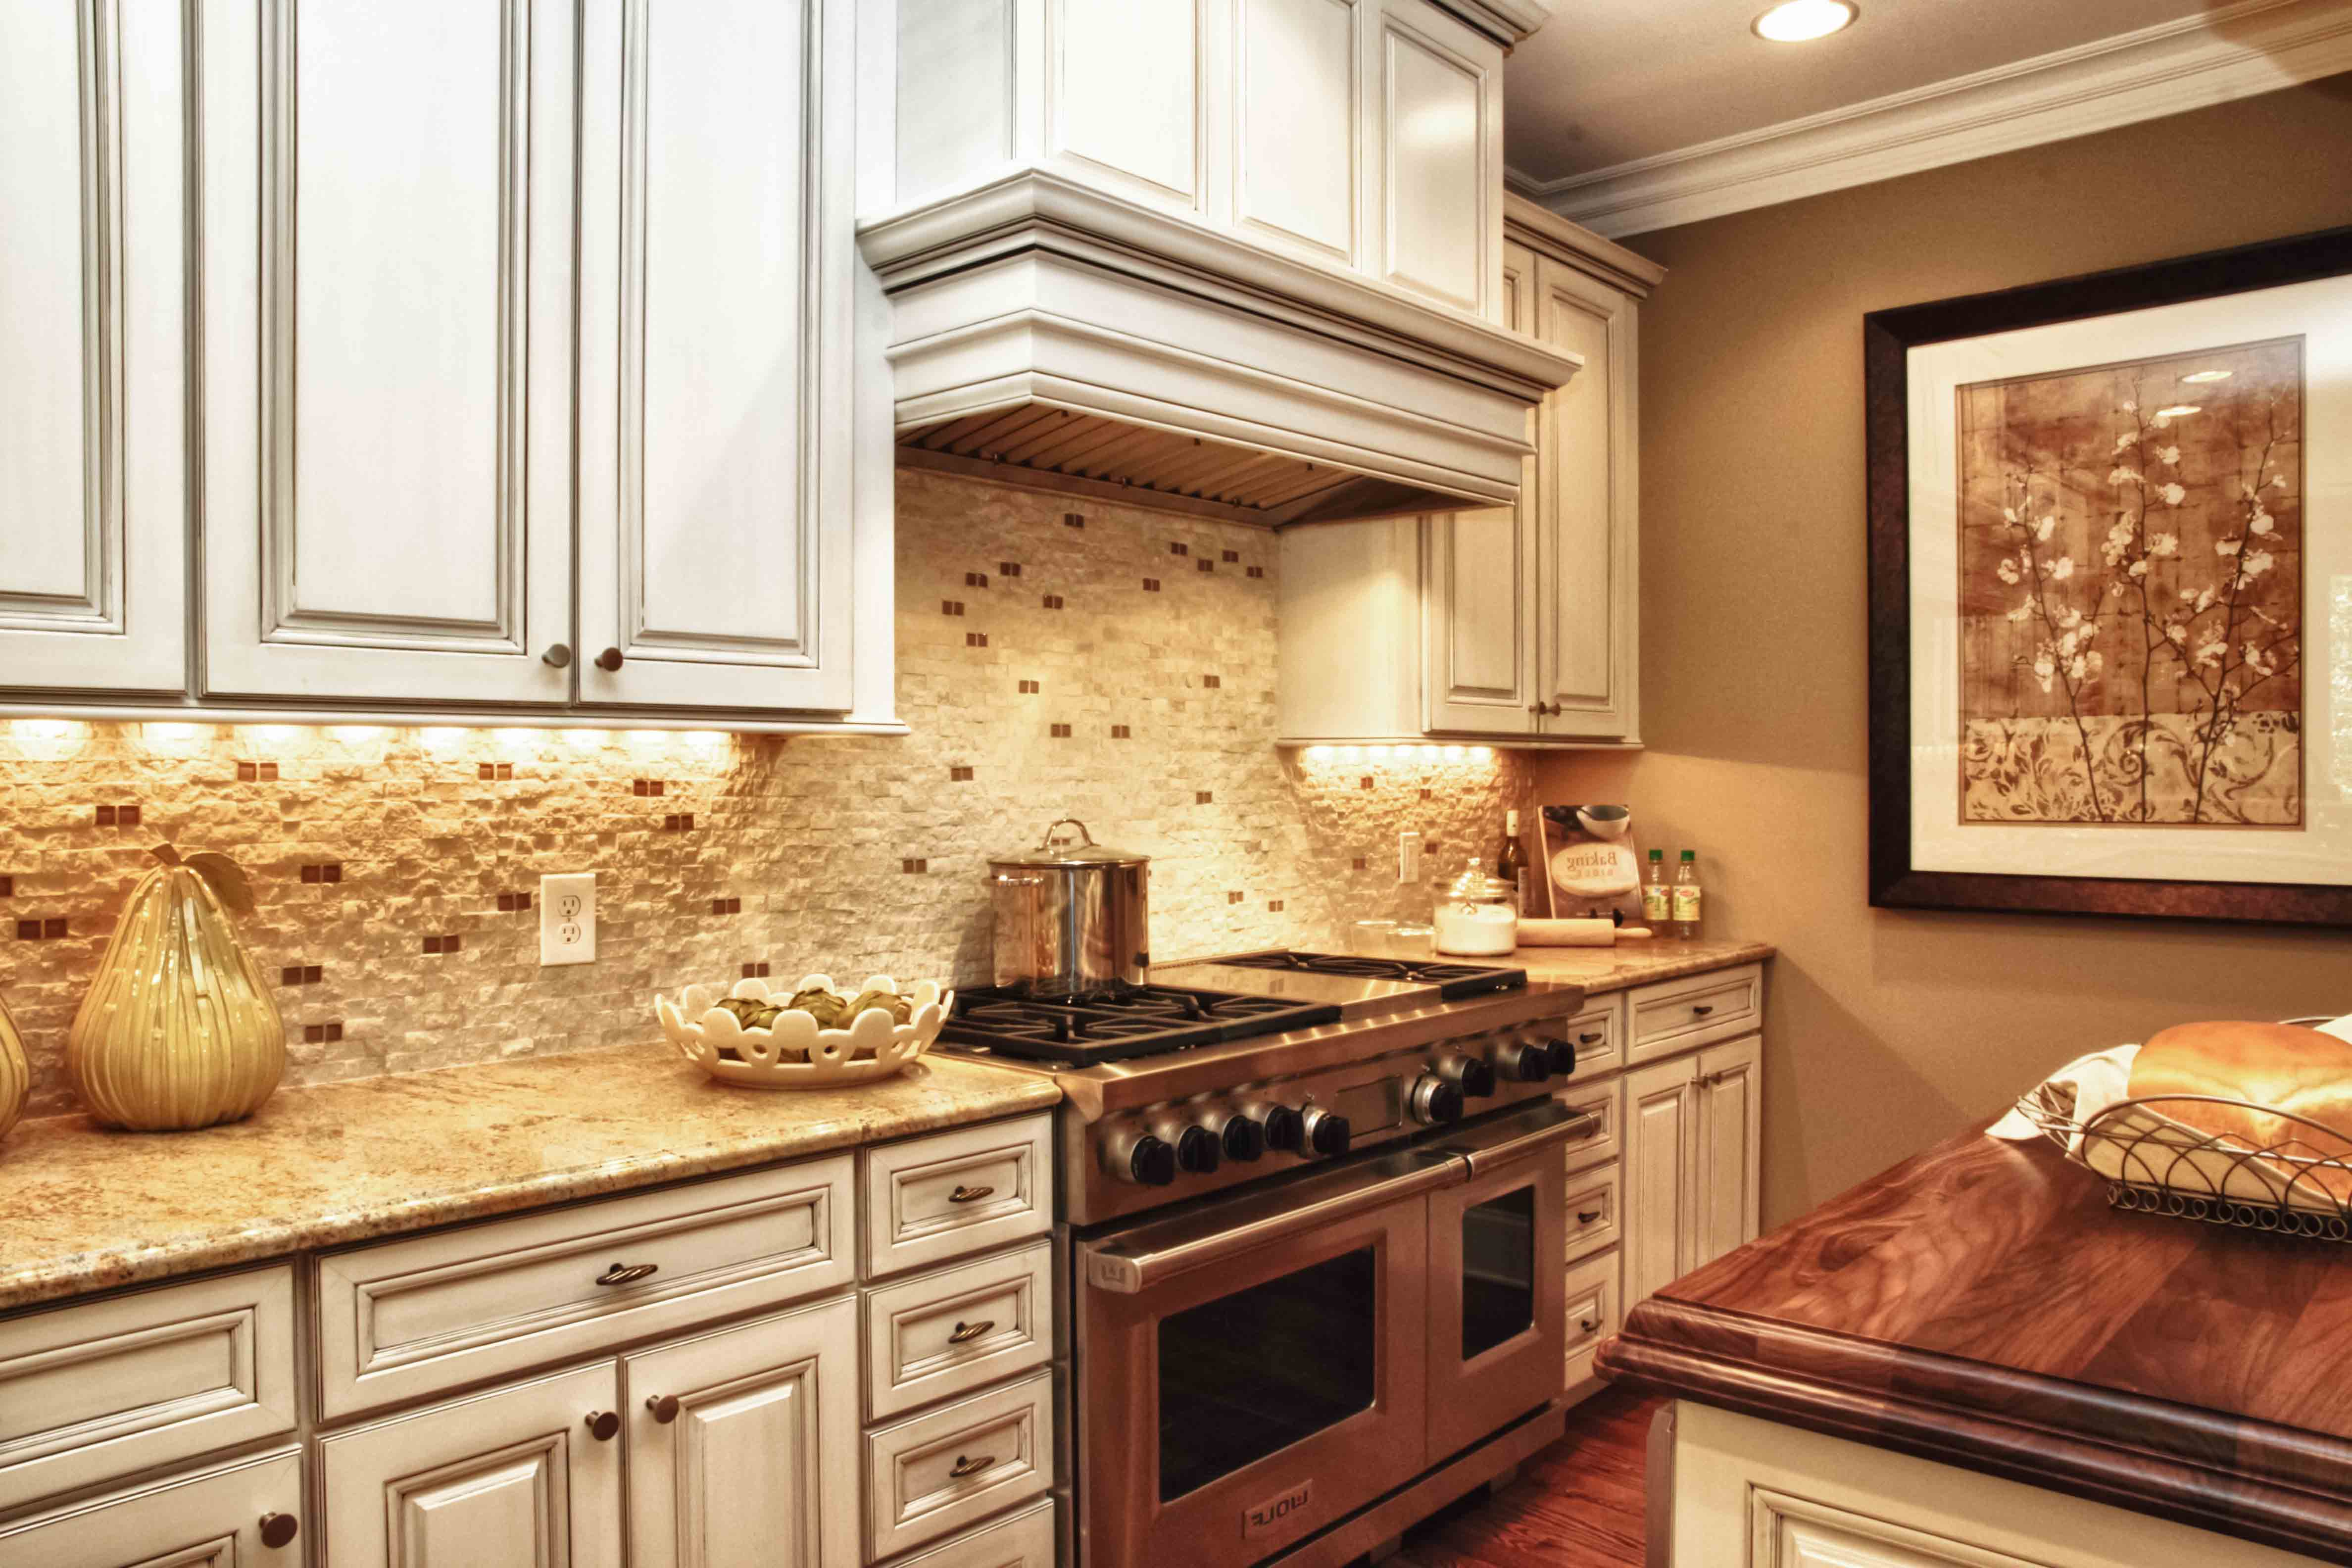 Sparkling Kitchen Backsplash Tile For Beautiful Decorating